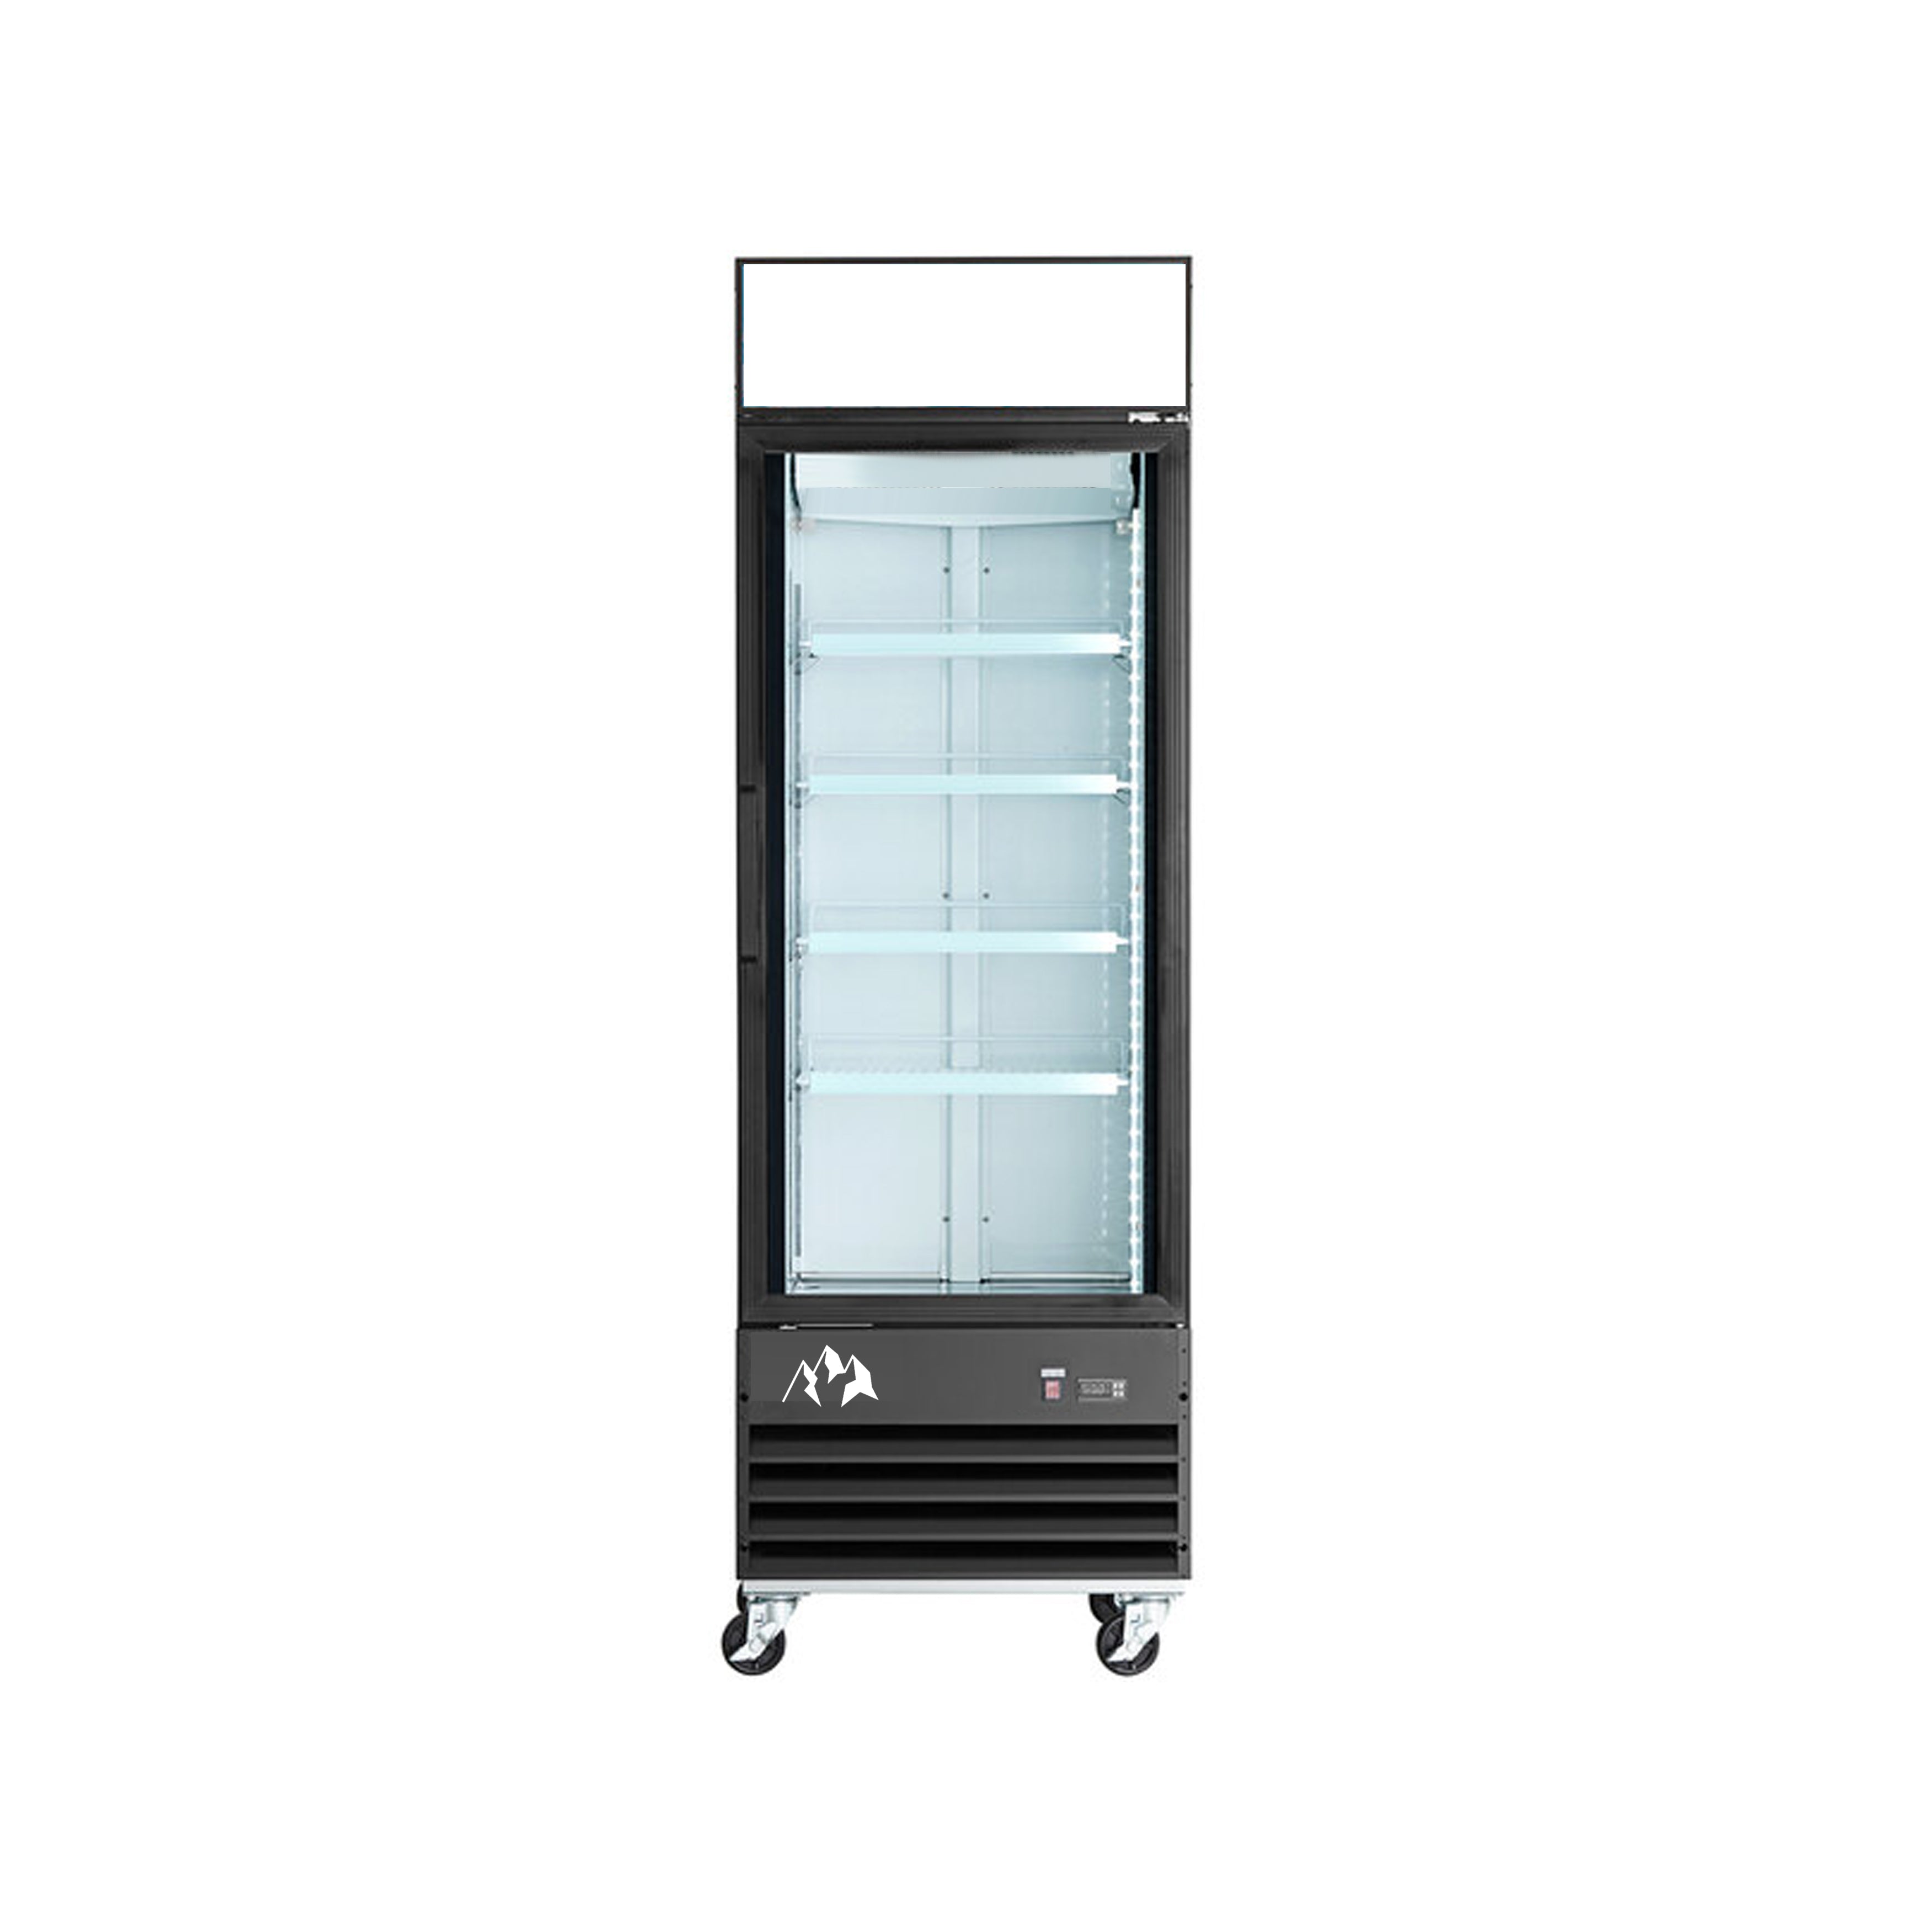 Chef AAA - SC-568FDX, Commercial 27" 1 Glass Door Merchandiser Refrigerator 20 cu. ft.